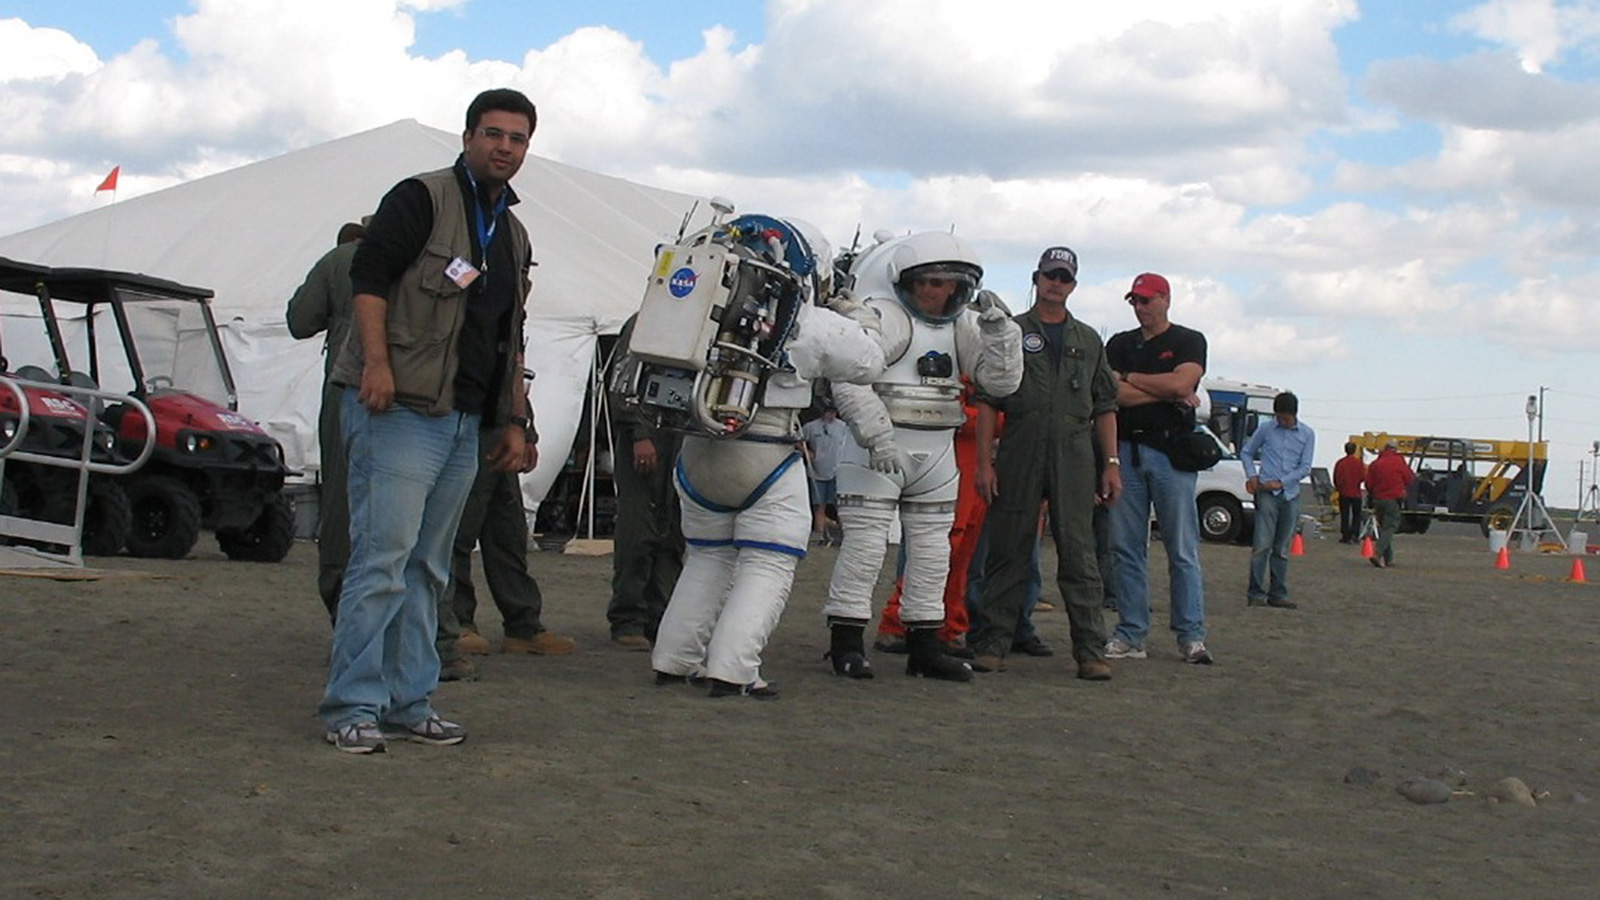 د عصام حجي خلال التدريبات الحديثة لمشروع العودة للقمر، مركز جونسون لدراسات الفضاء بمدينة هيوستن الأميركية (وكالة ناسا)